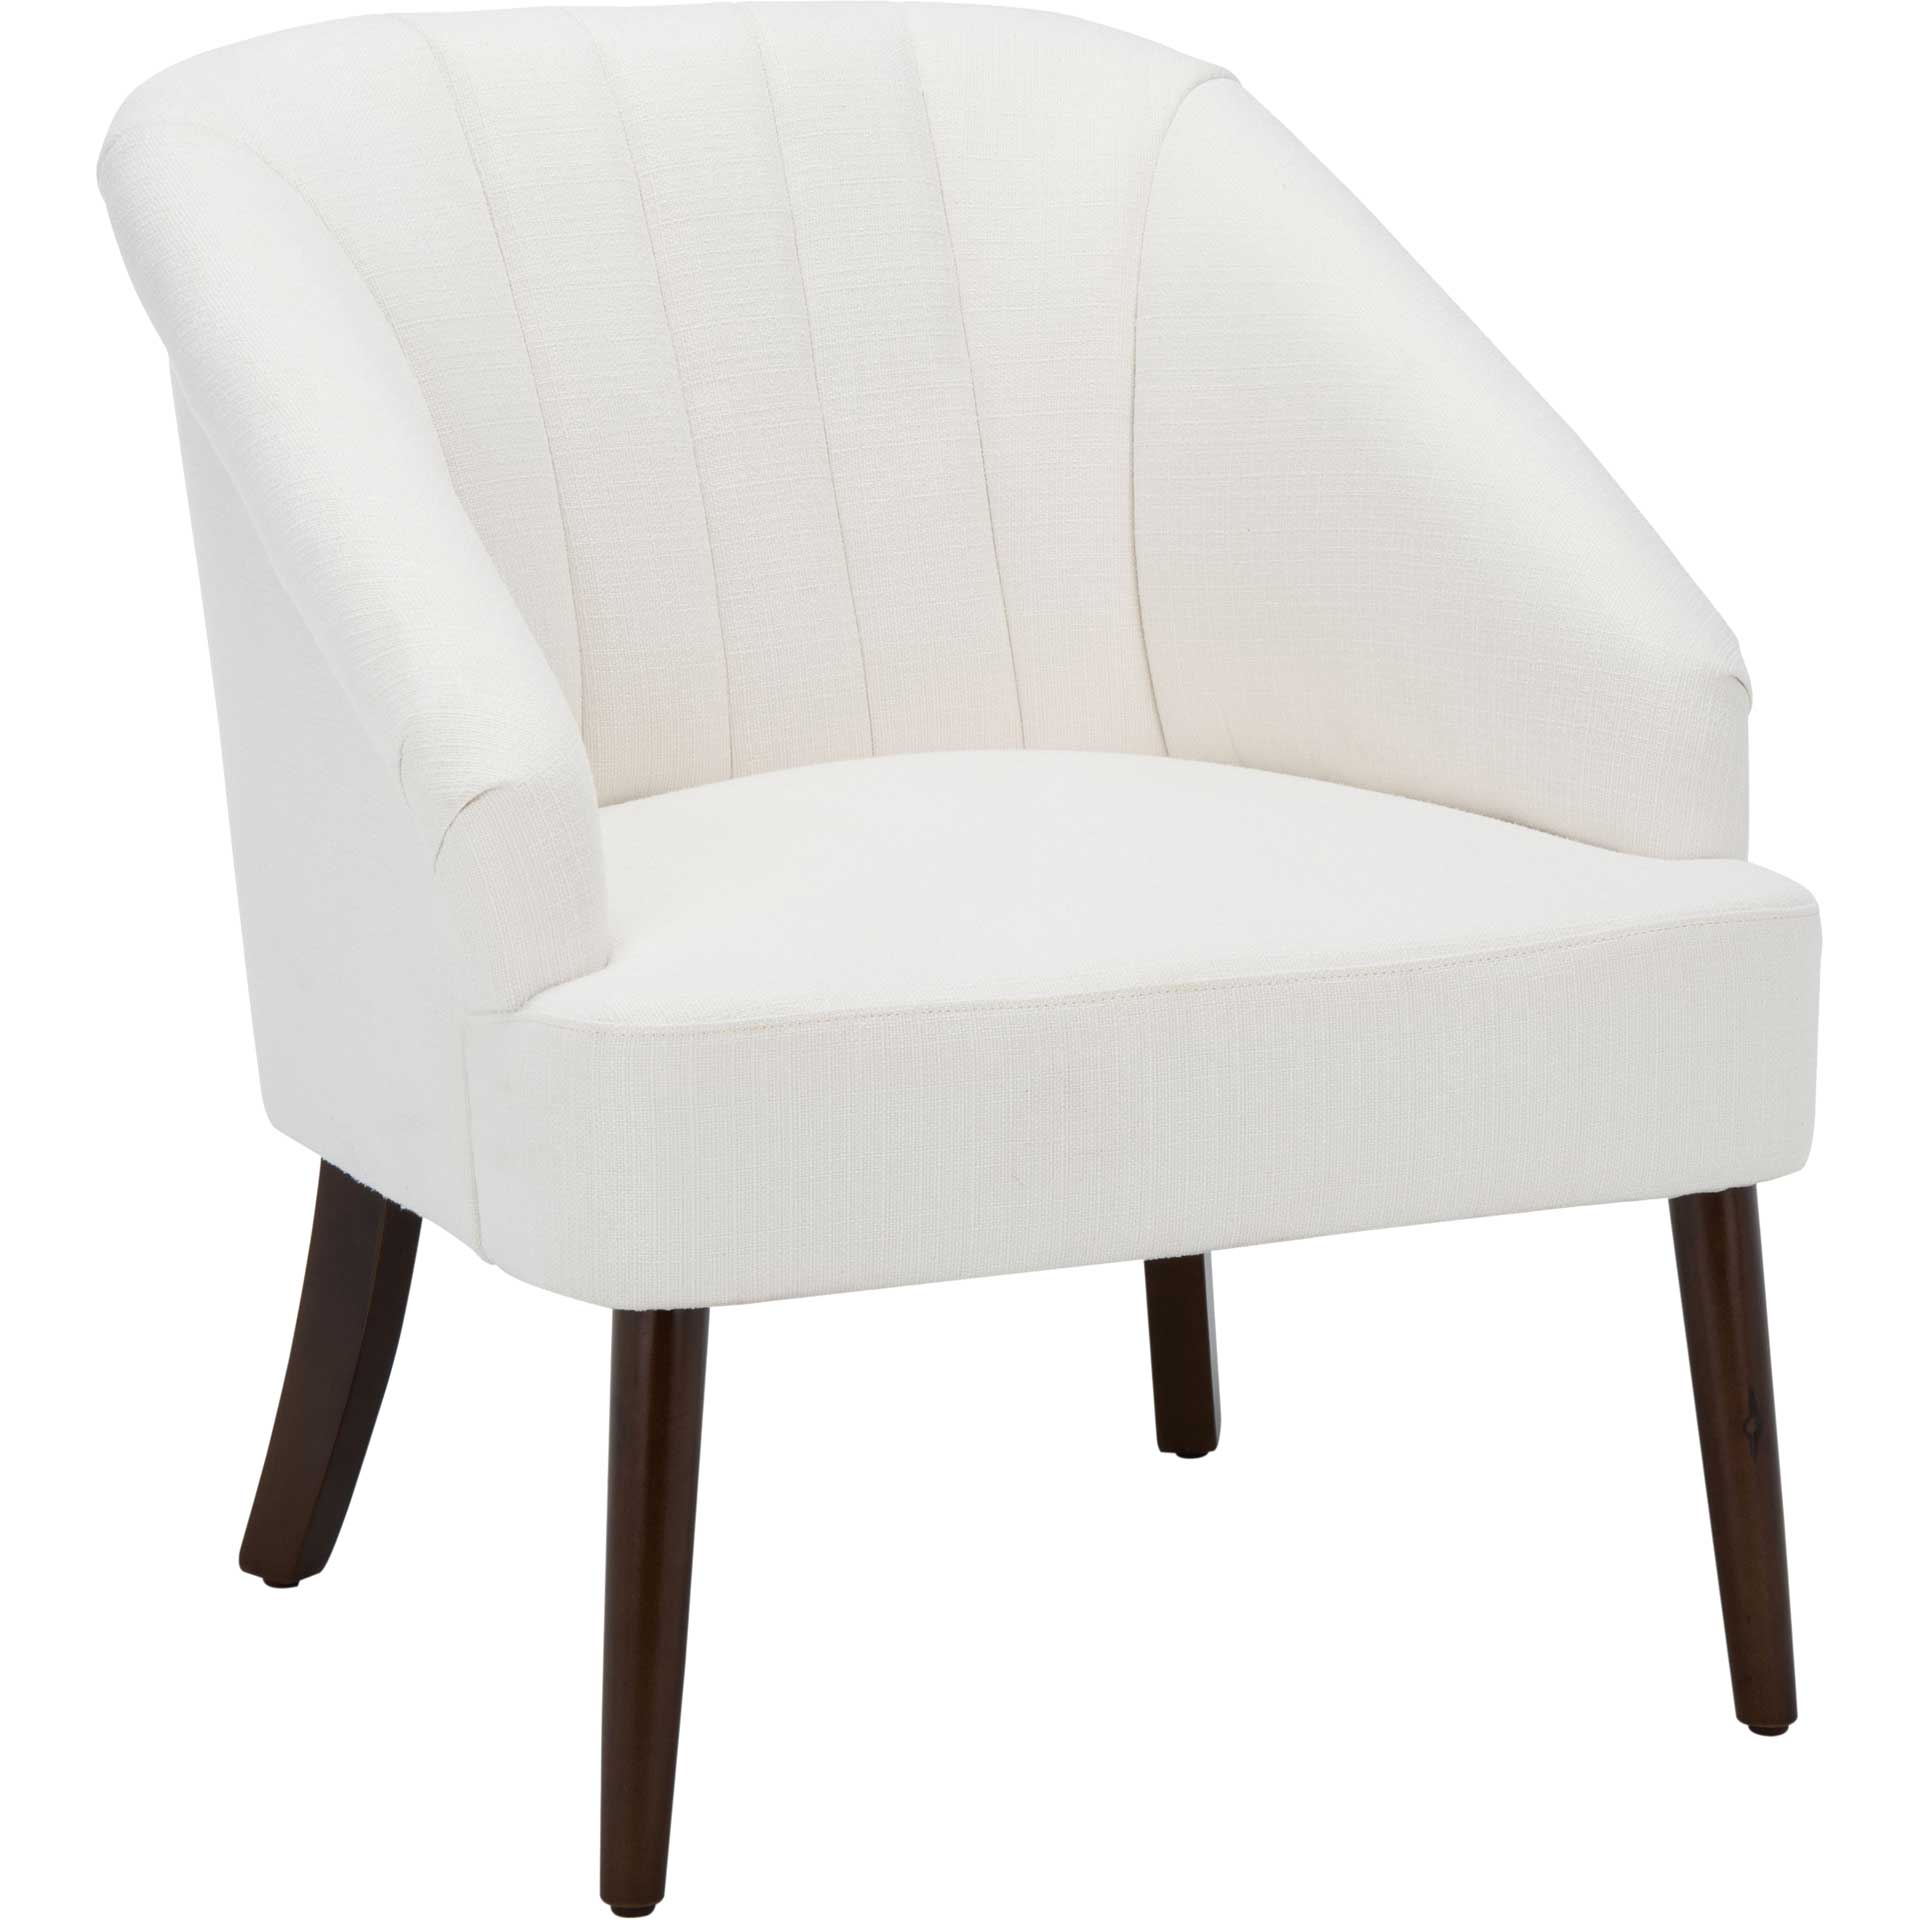 Quacey Accent Chair White